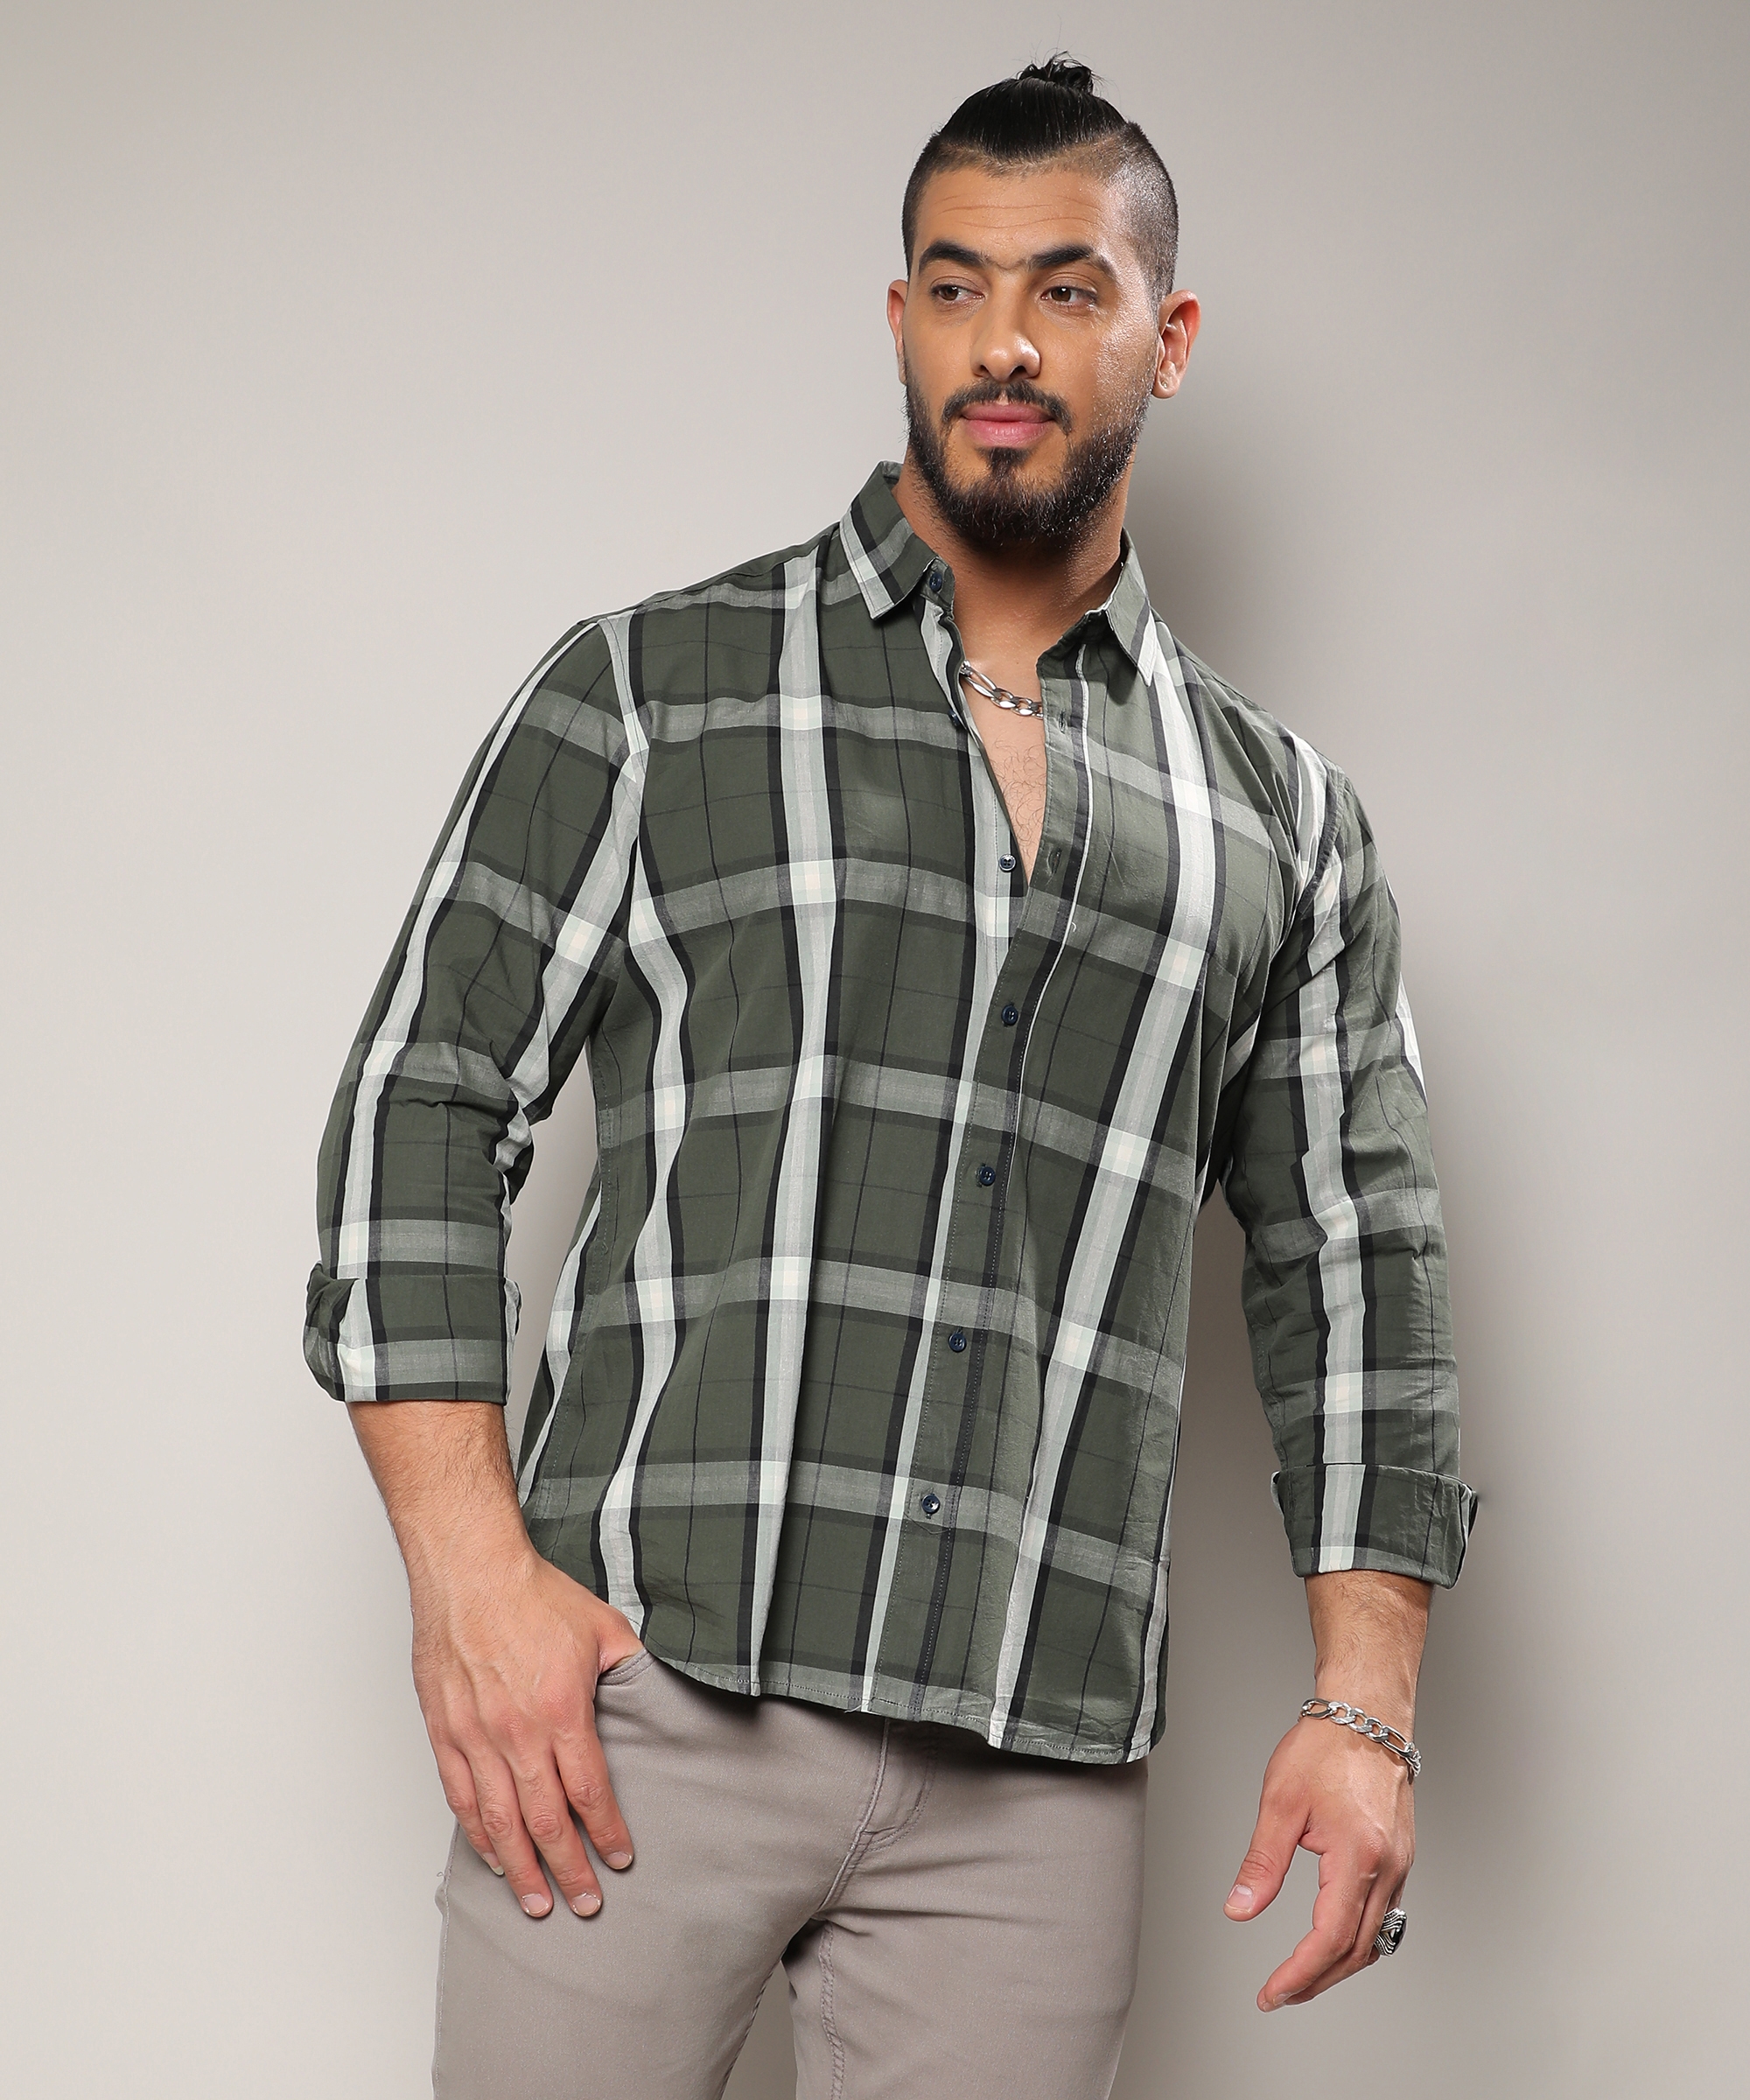 Instafab Plus | Men's Tartan Plaid Dark Green Shirt